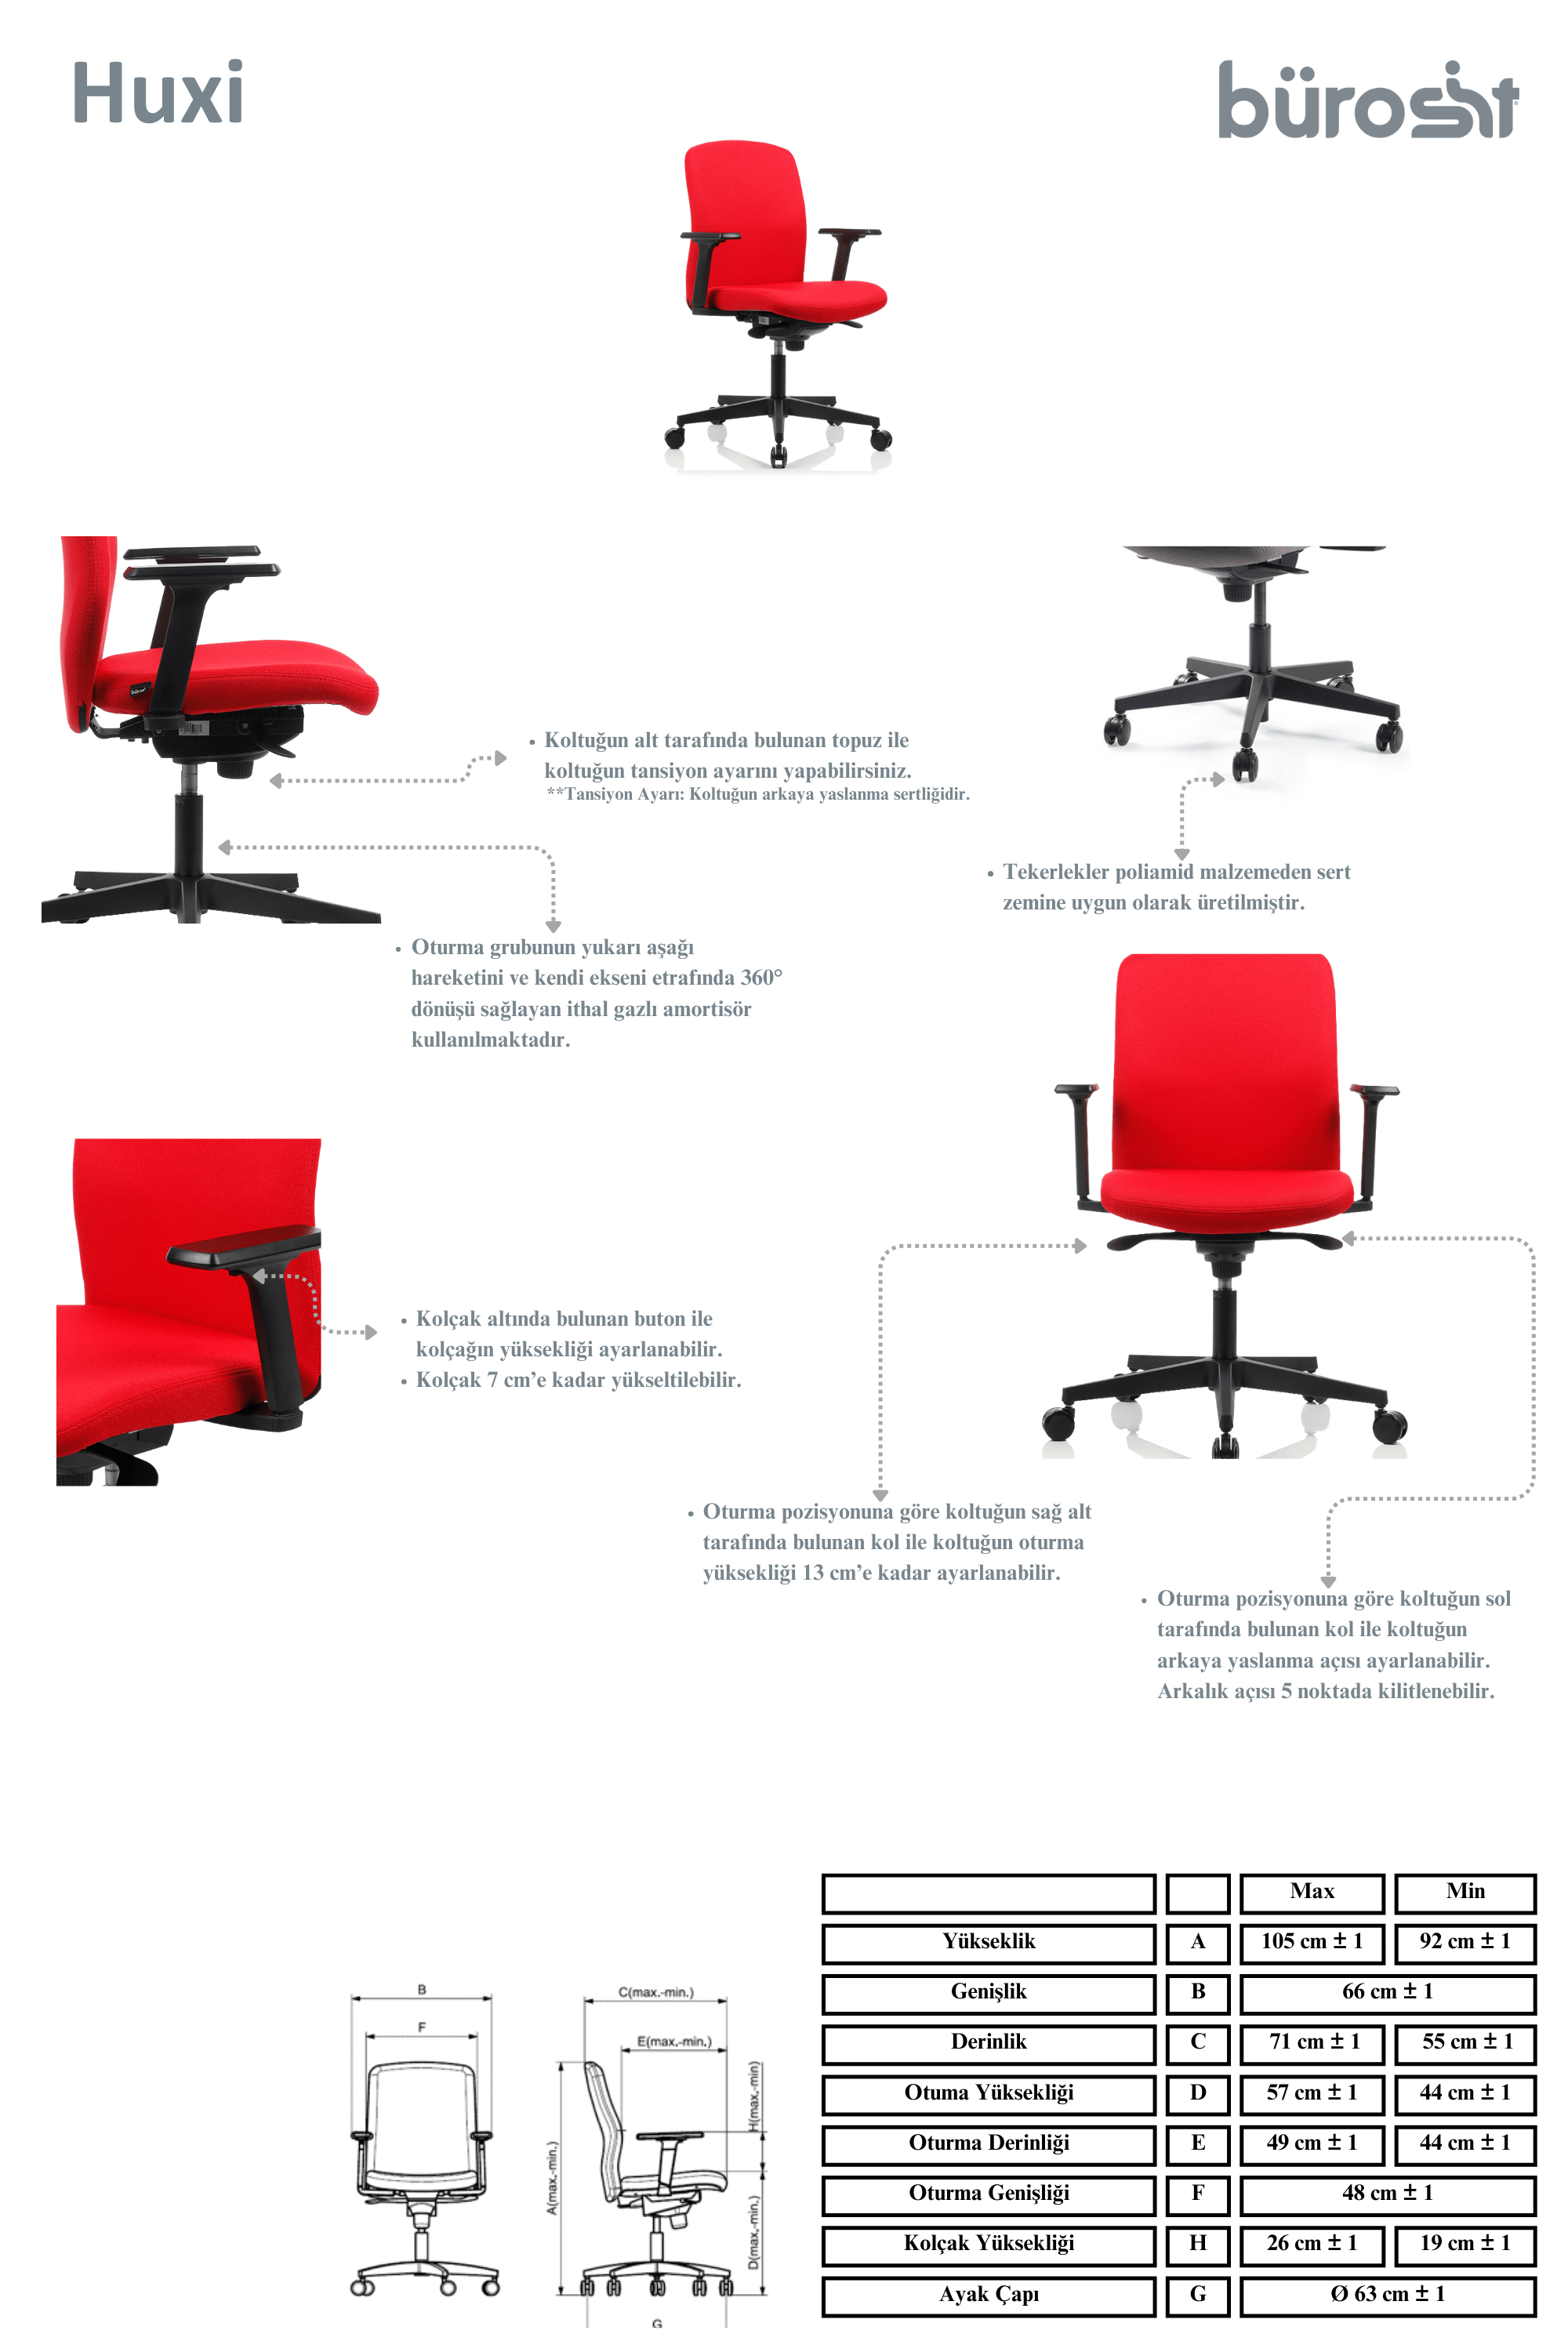 huxi7calisma-koltugu-ofis-koltuklari-ofis-mobilyalari-ergonomik-koltuk.png (424 KB)